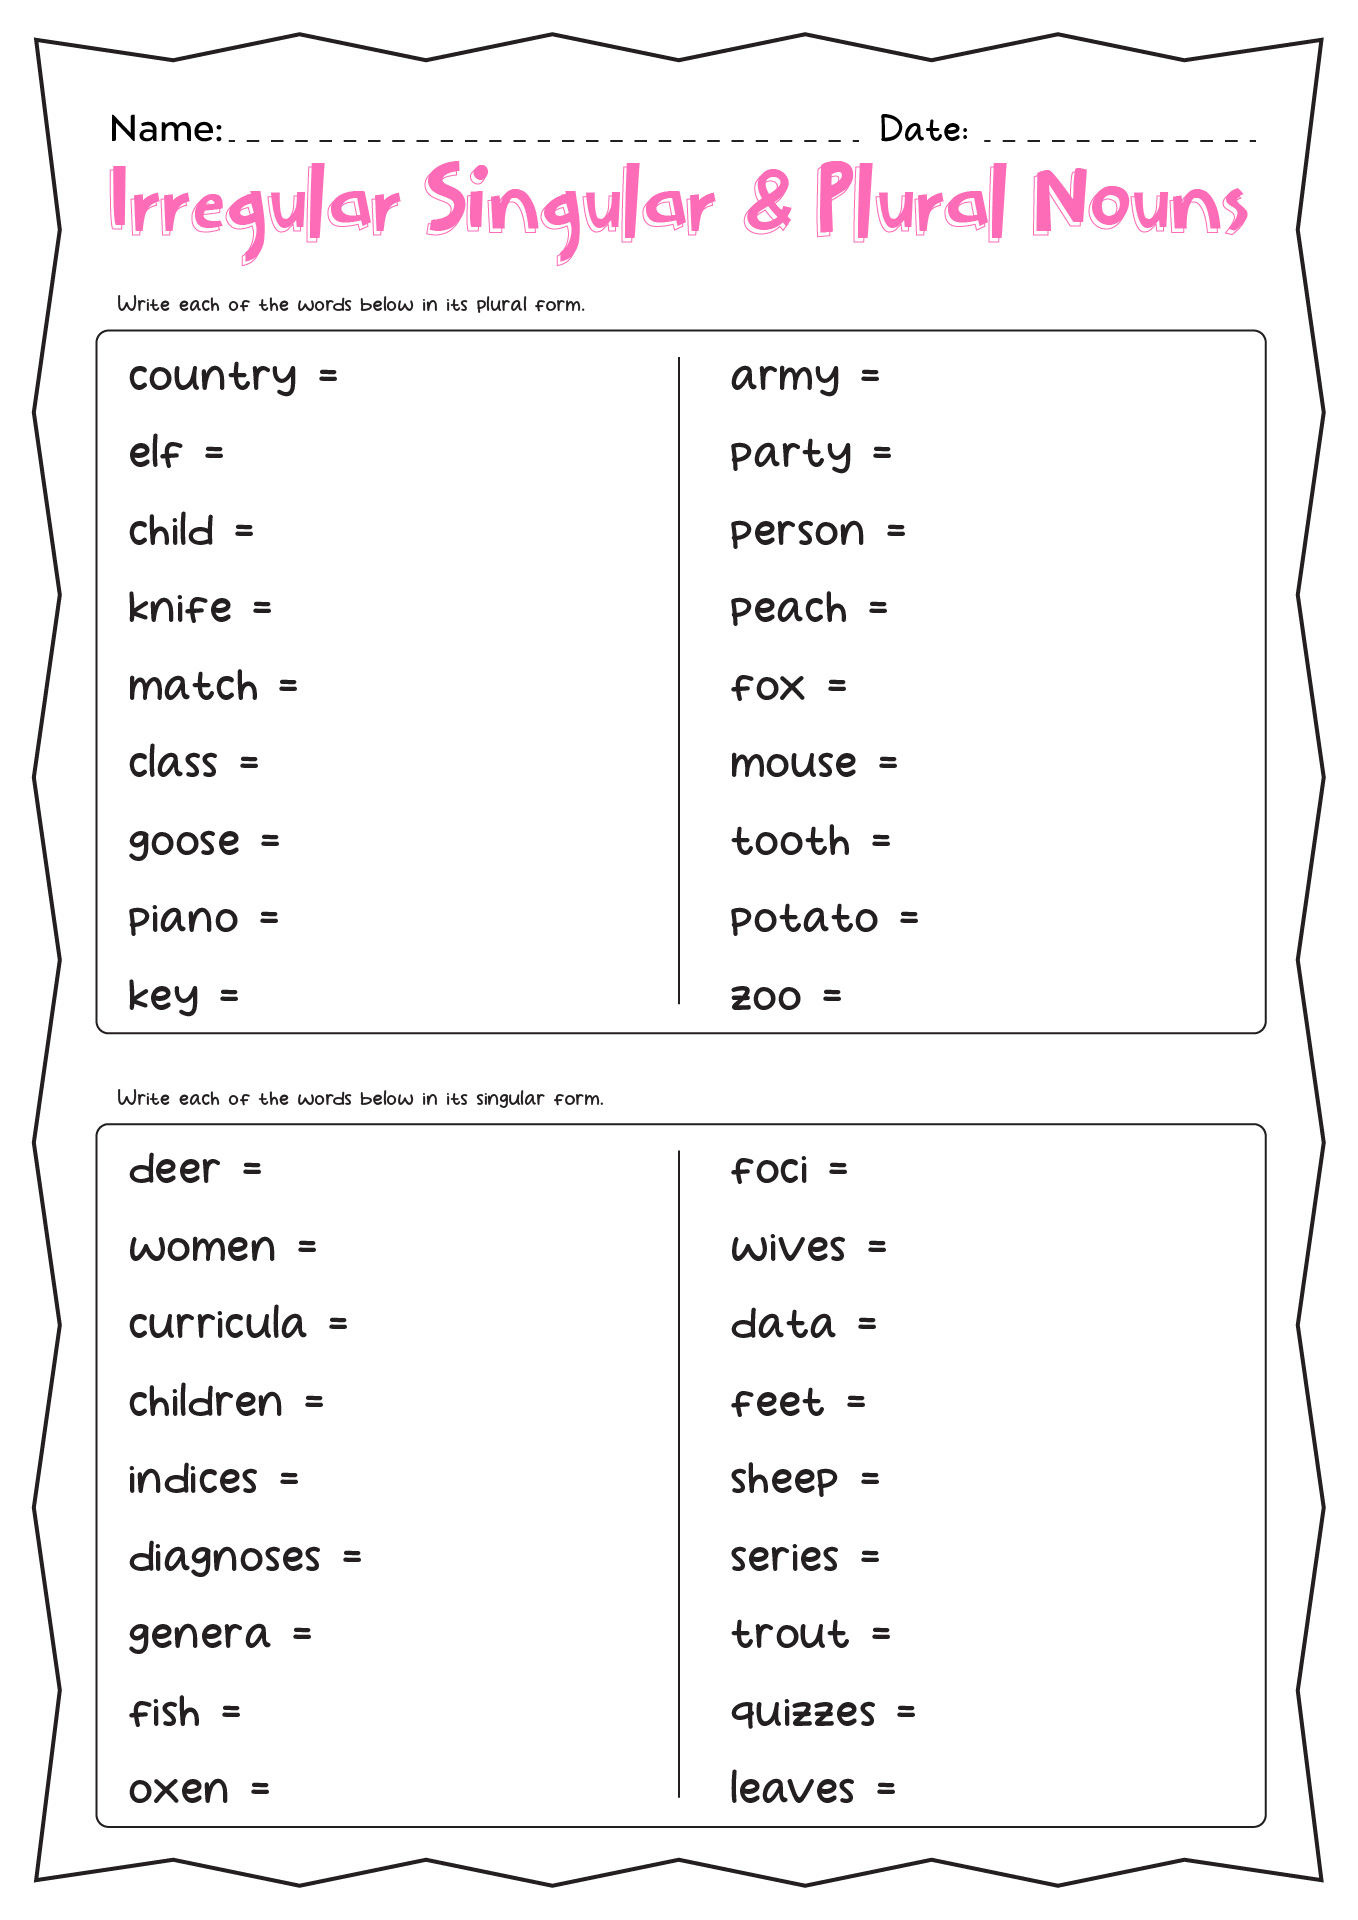 Irregular Singular and Plural Nouns Worksheet Image